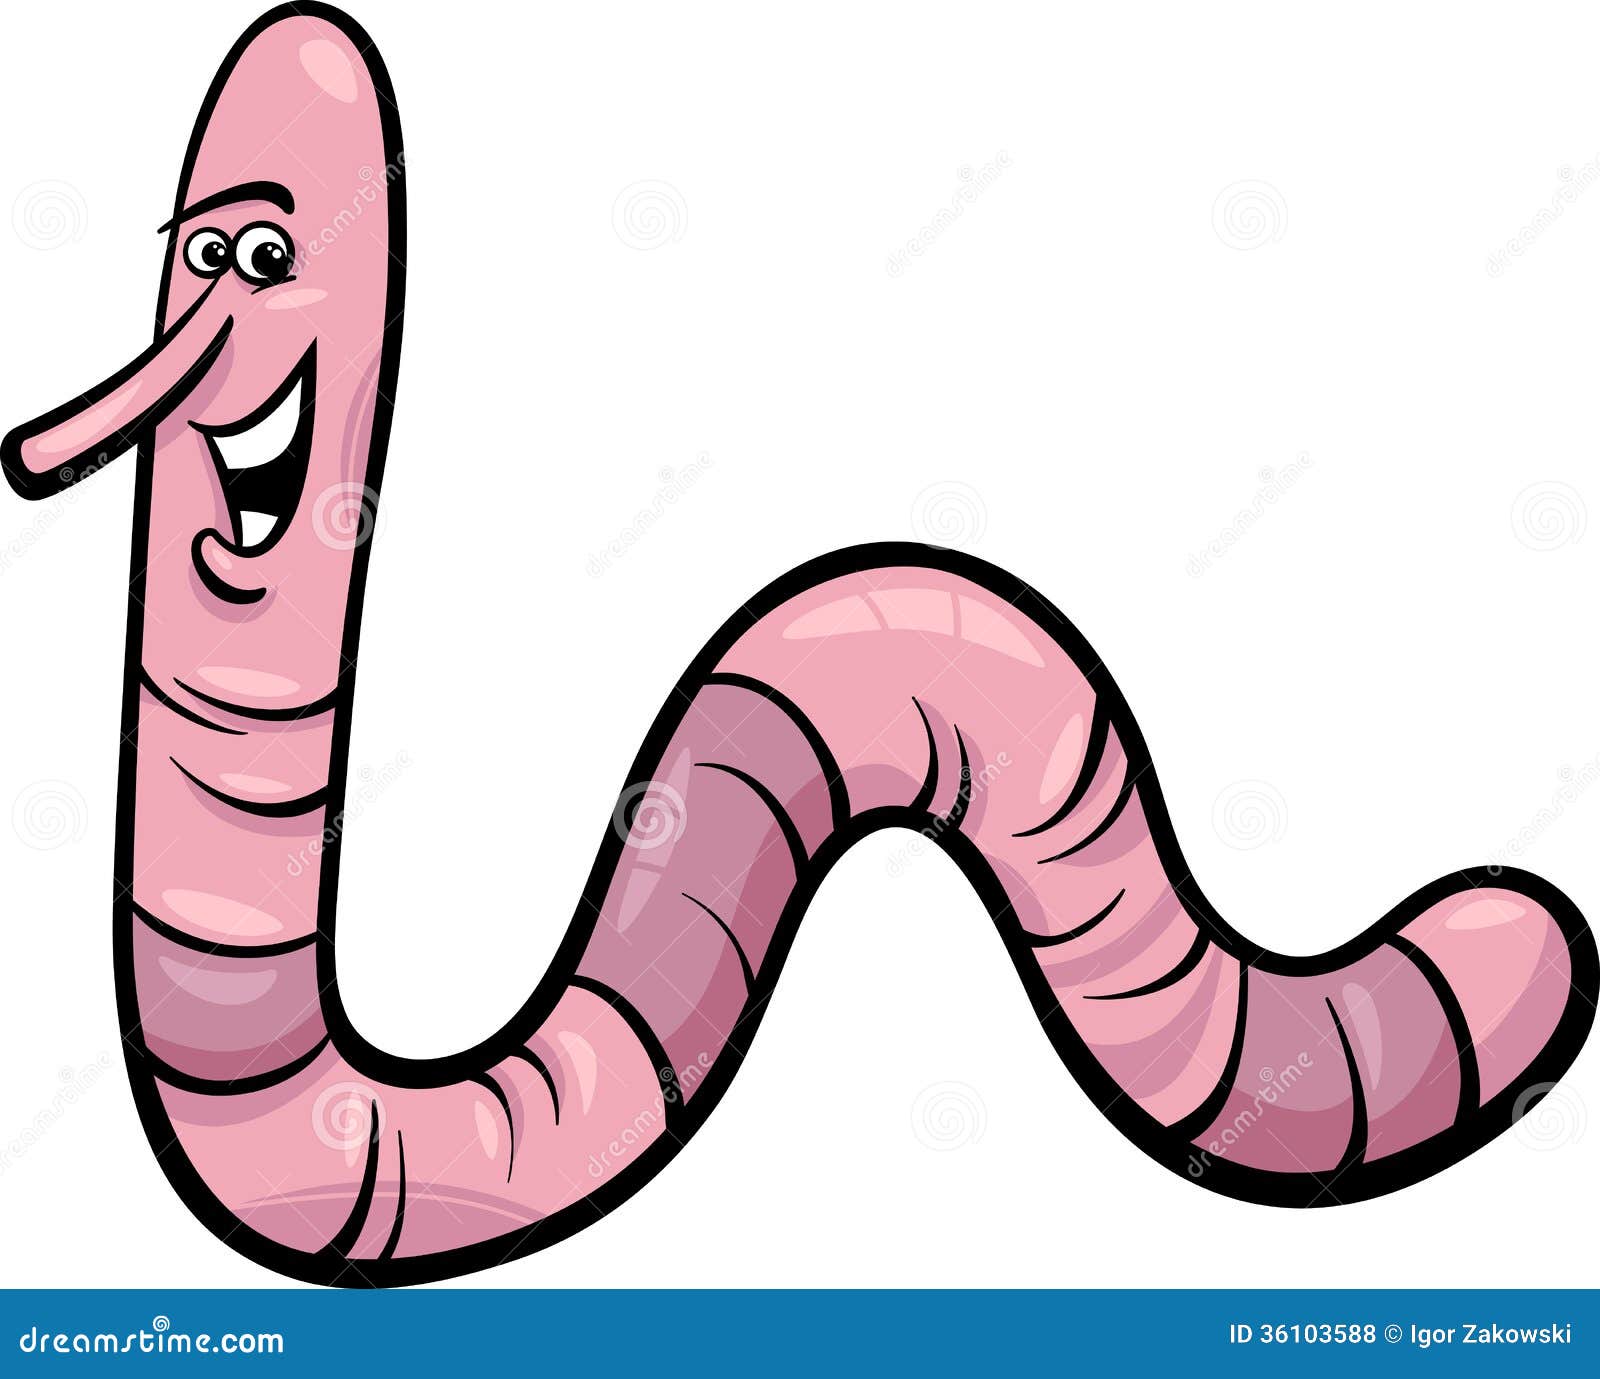 Earthworm Stock Illustrations – 4,766 Earthworm Stock